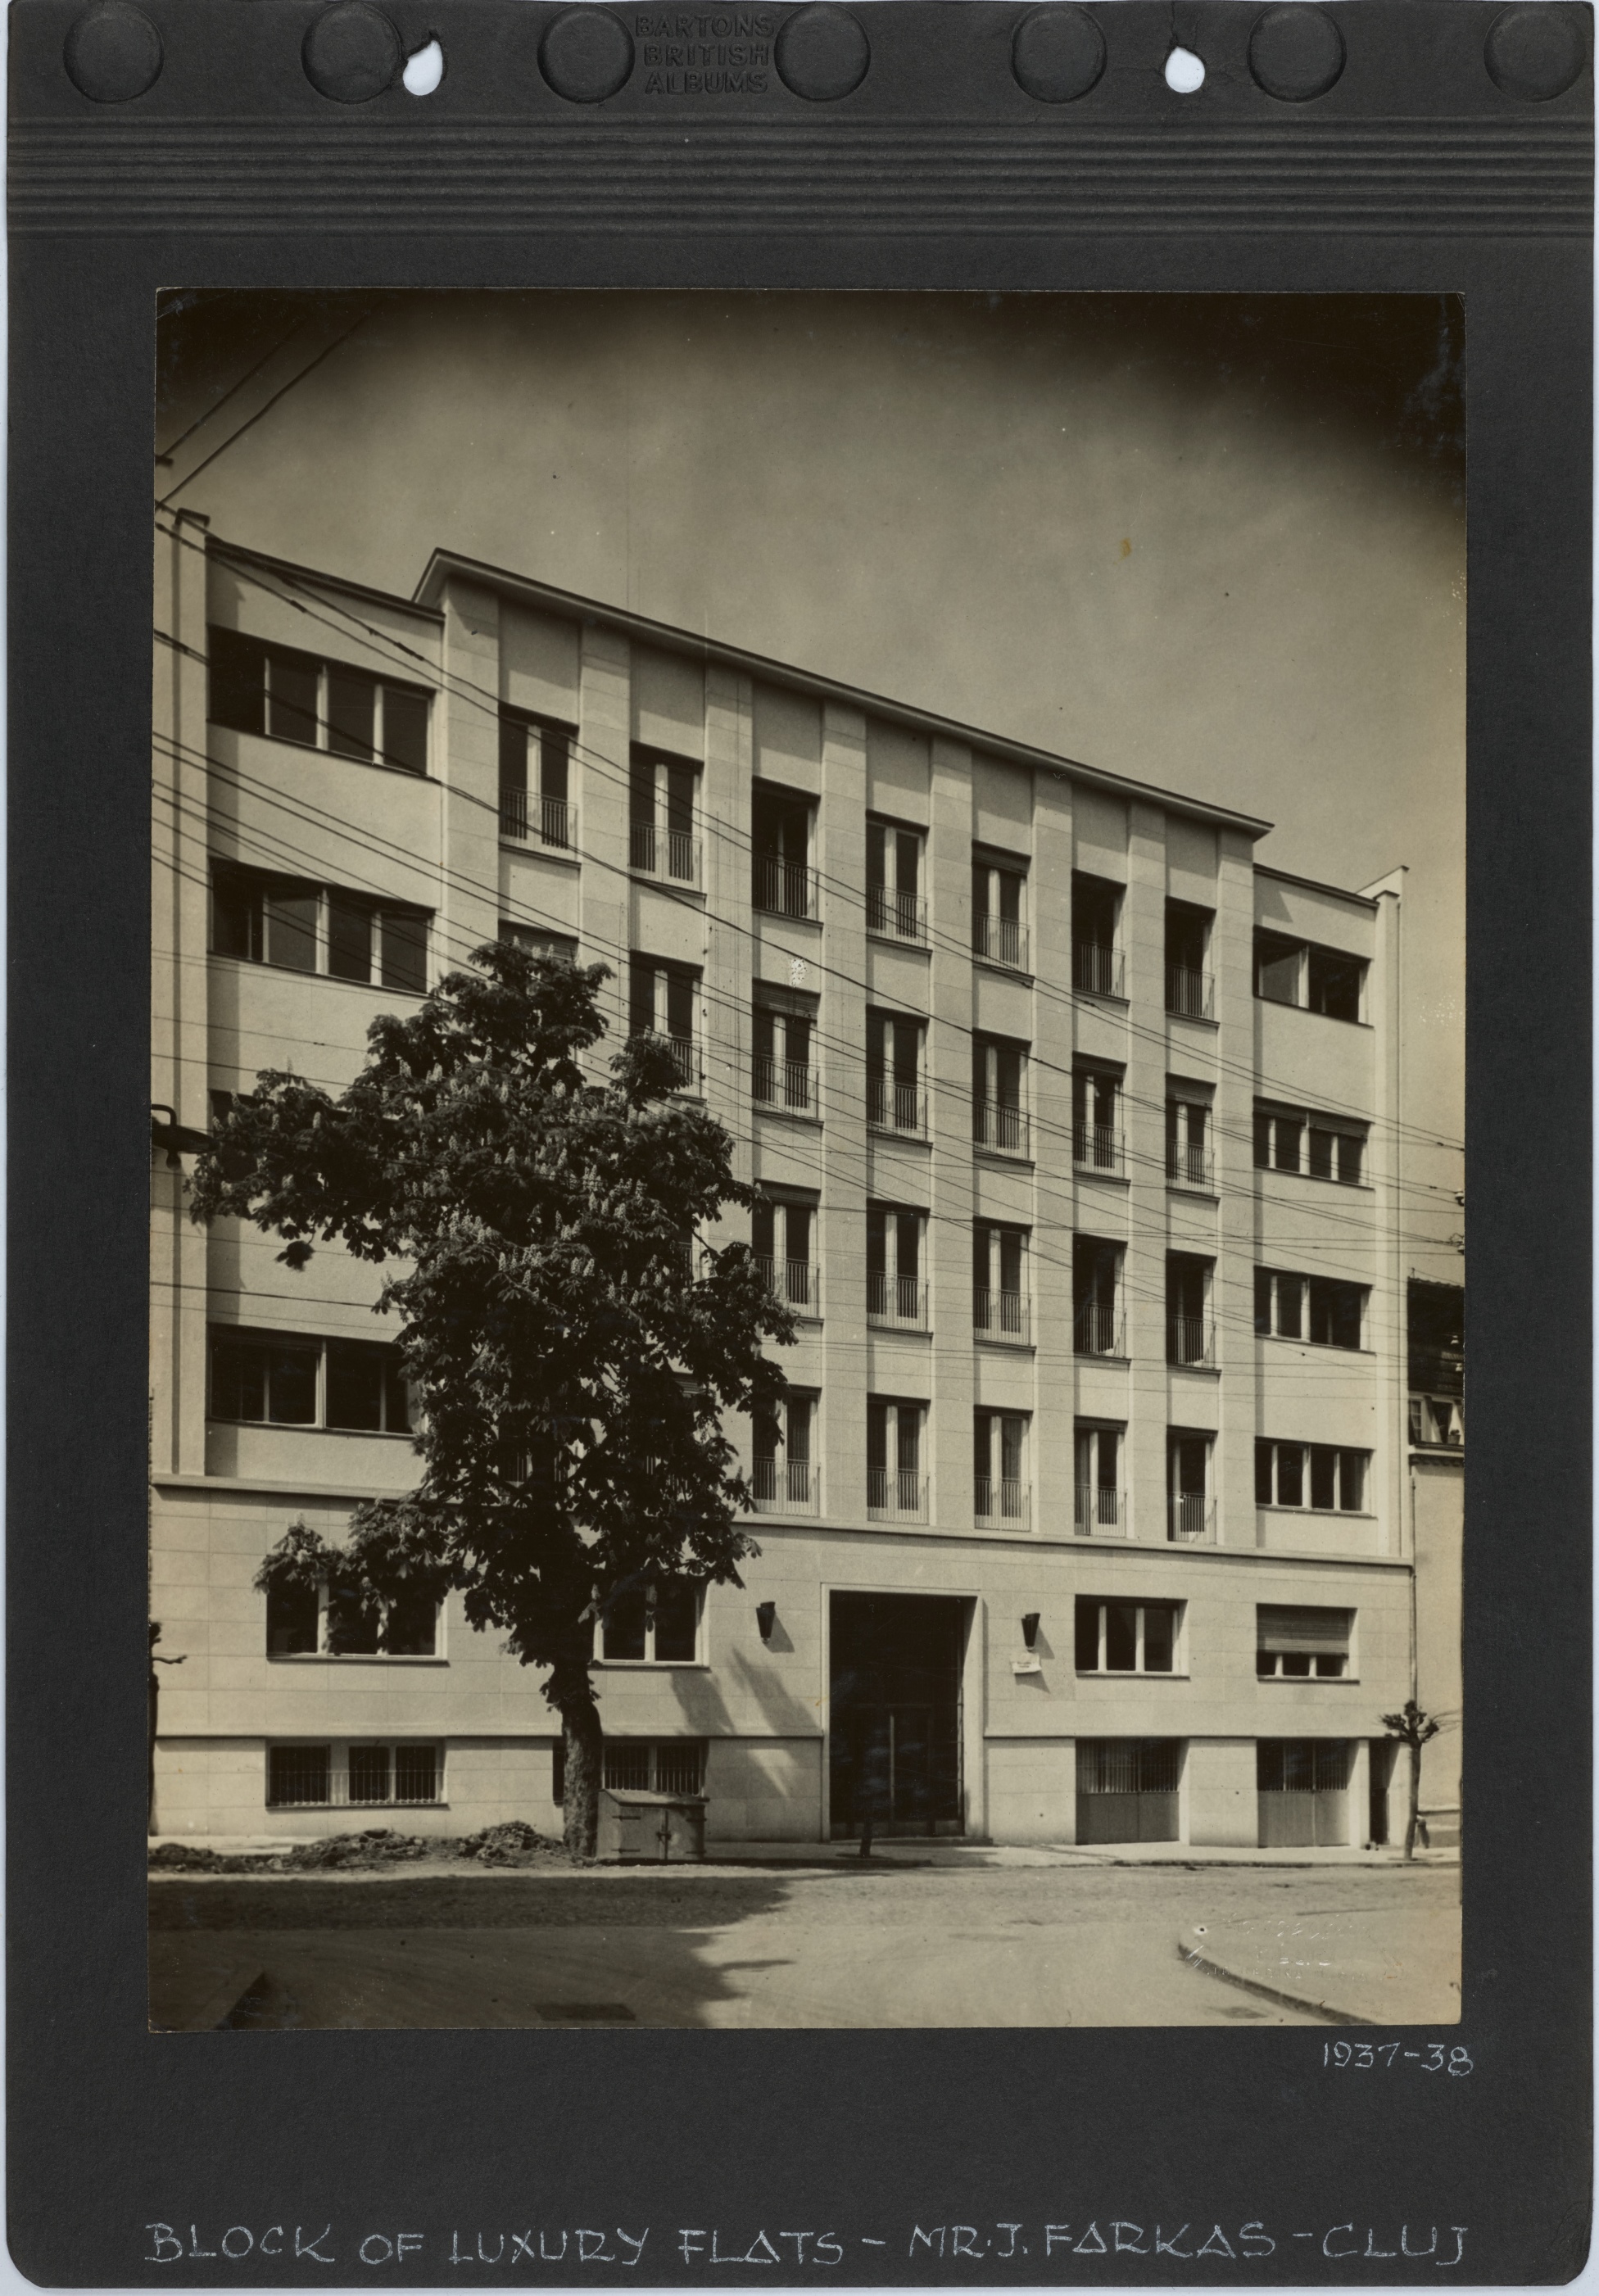 Block of luxury flats - Mr J. Farkas - Cluj, 1937-38. Fotofilm Cluj